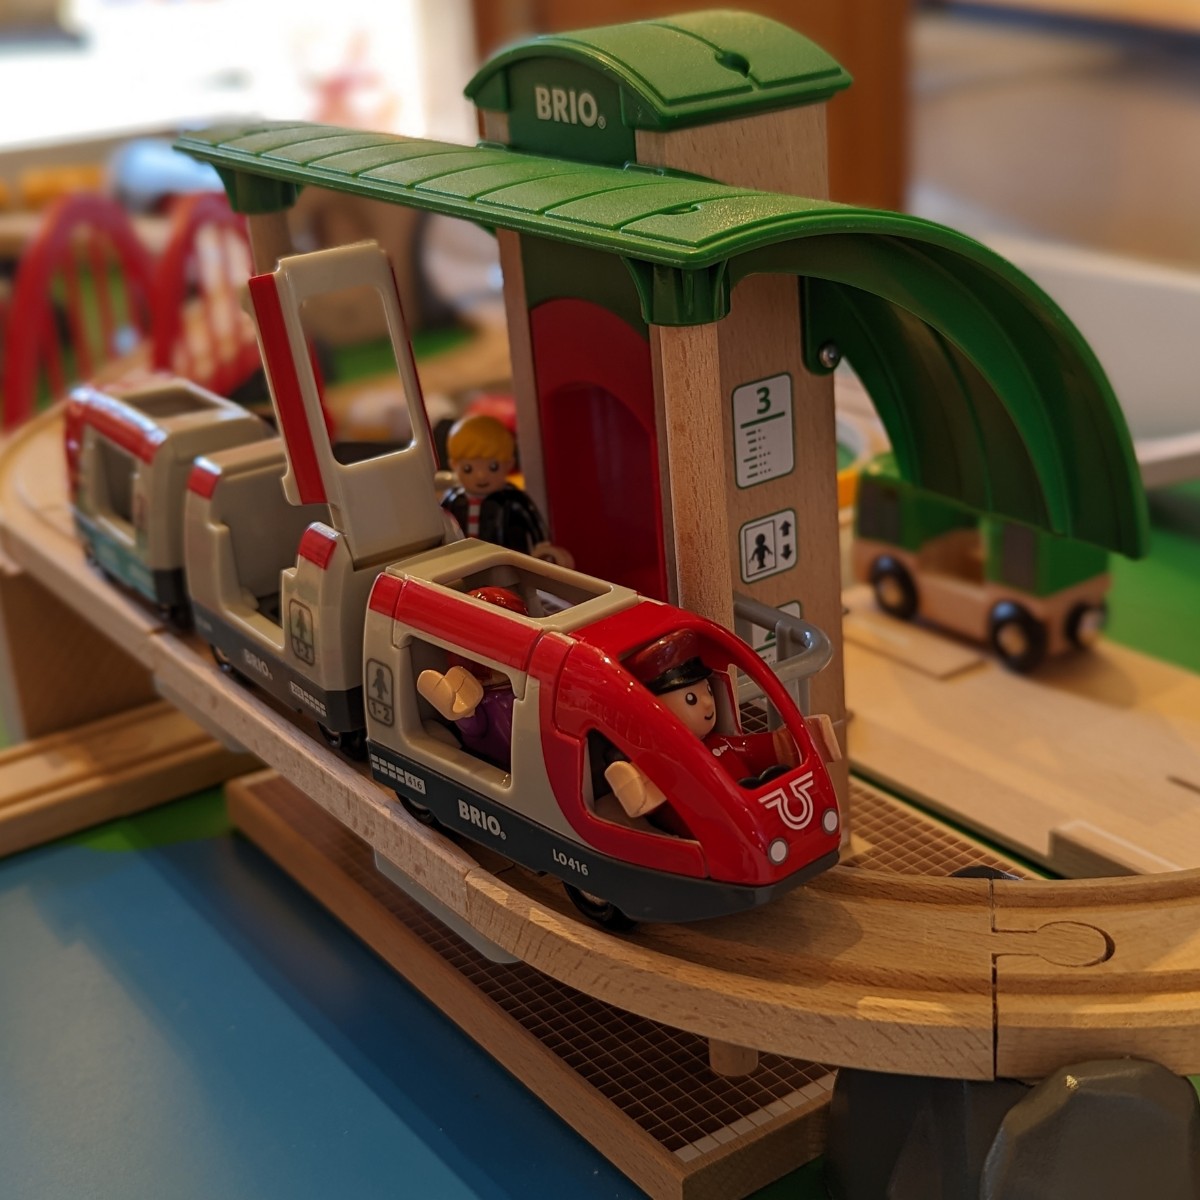 Brio wooden subway play set for children on sale at WonderLab.